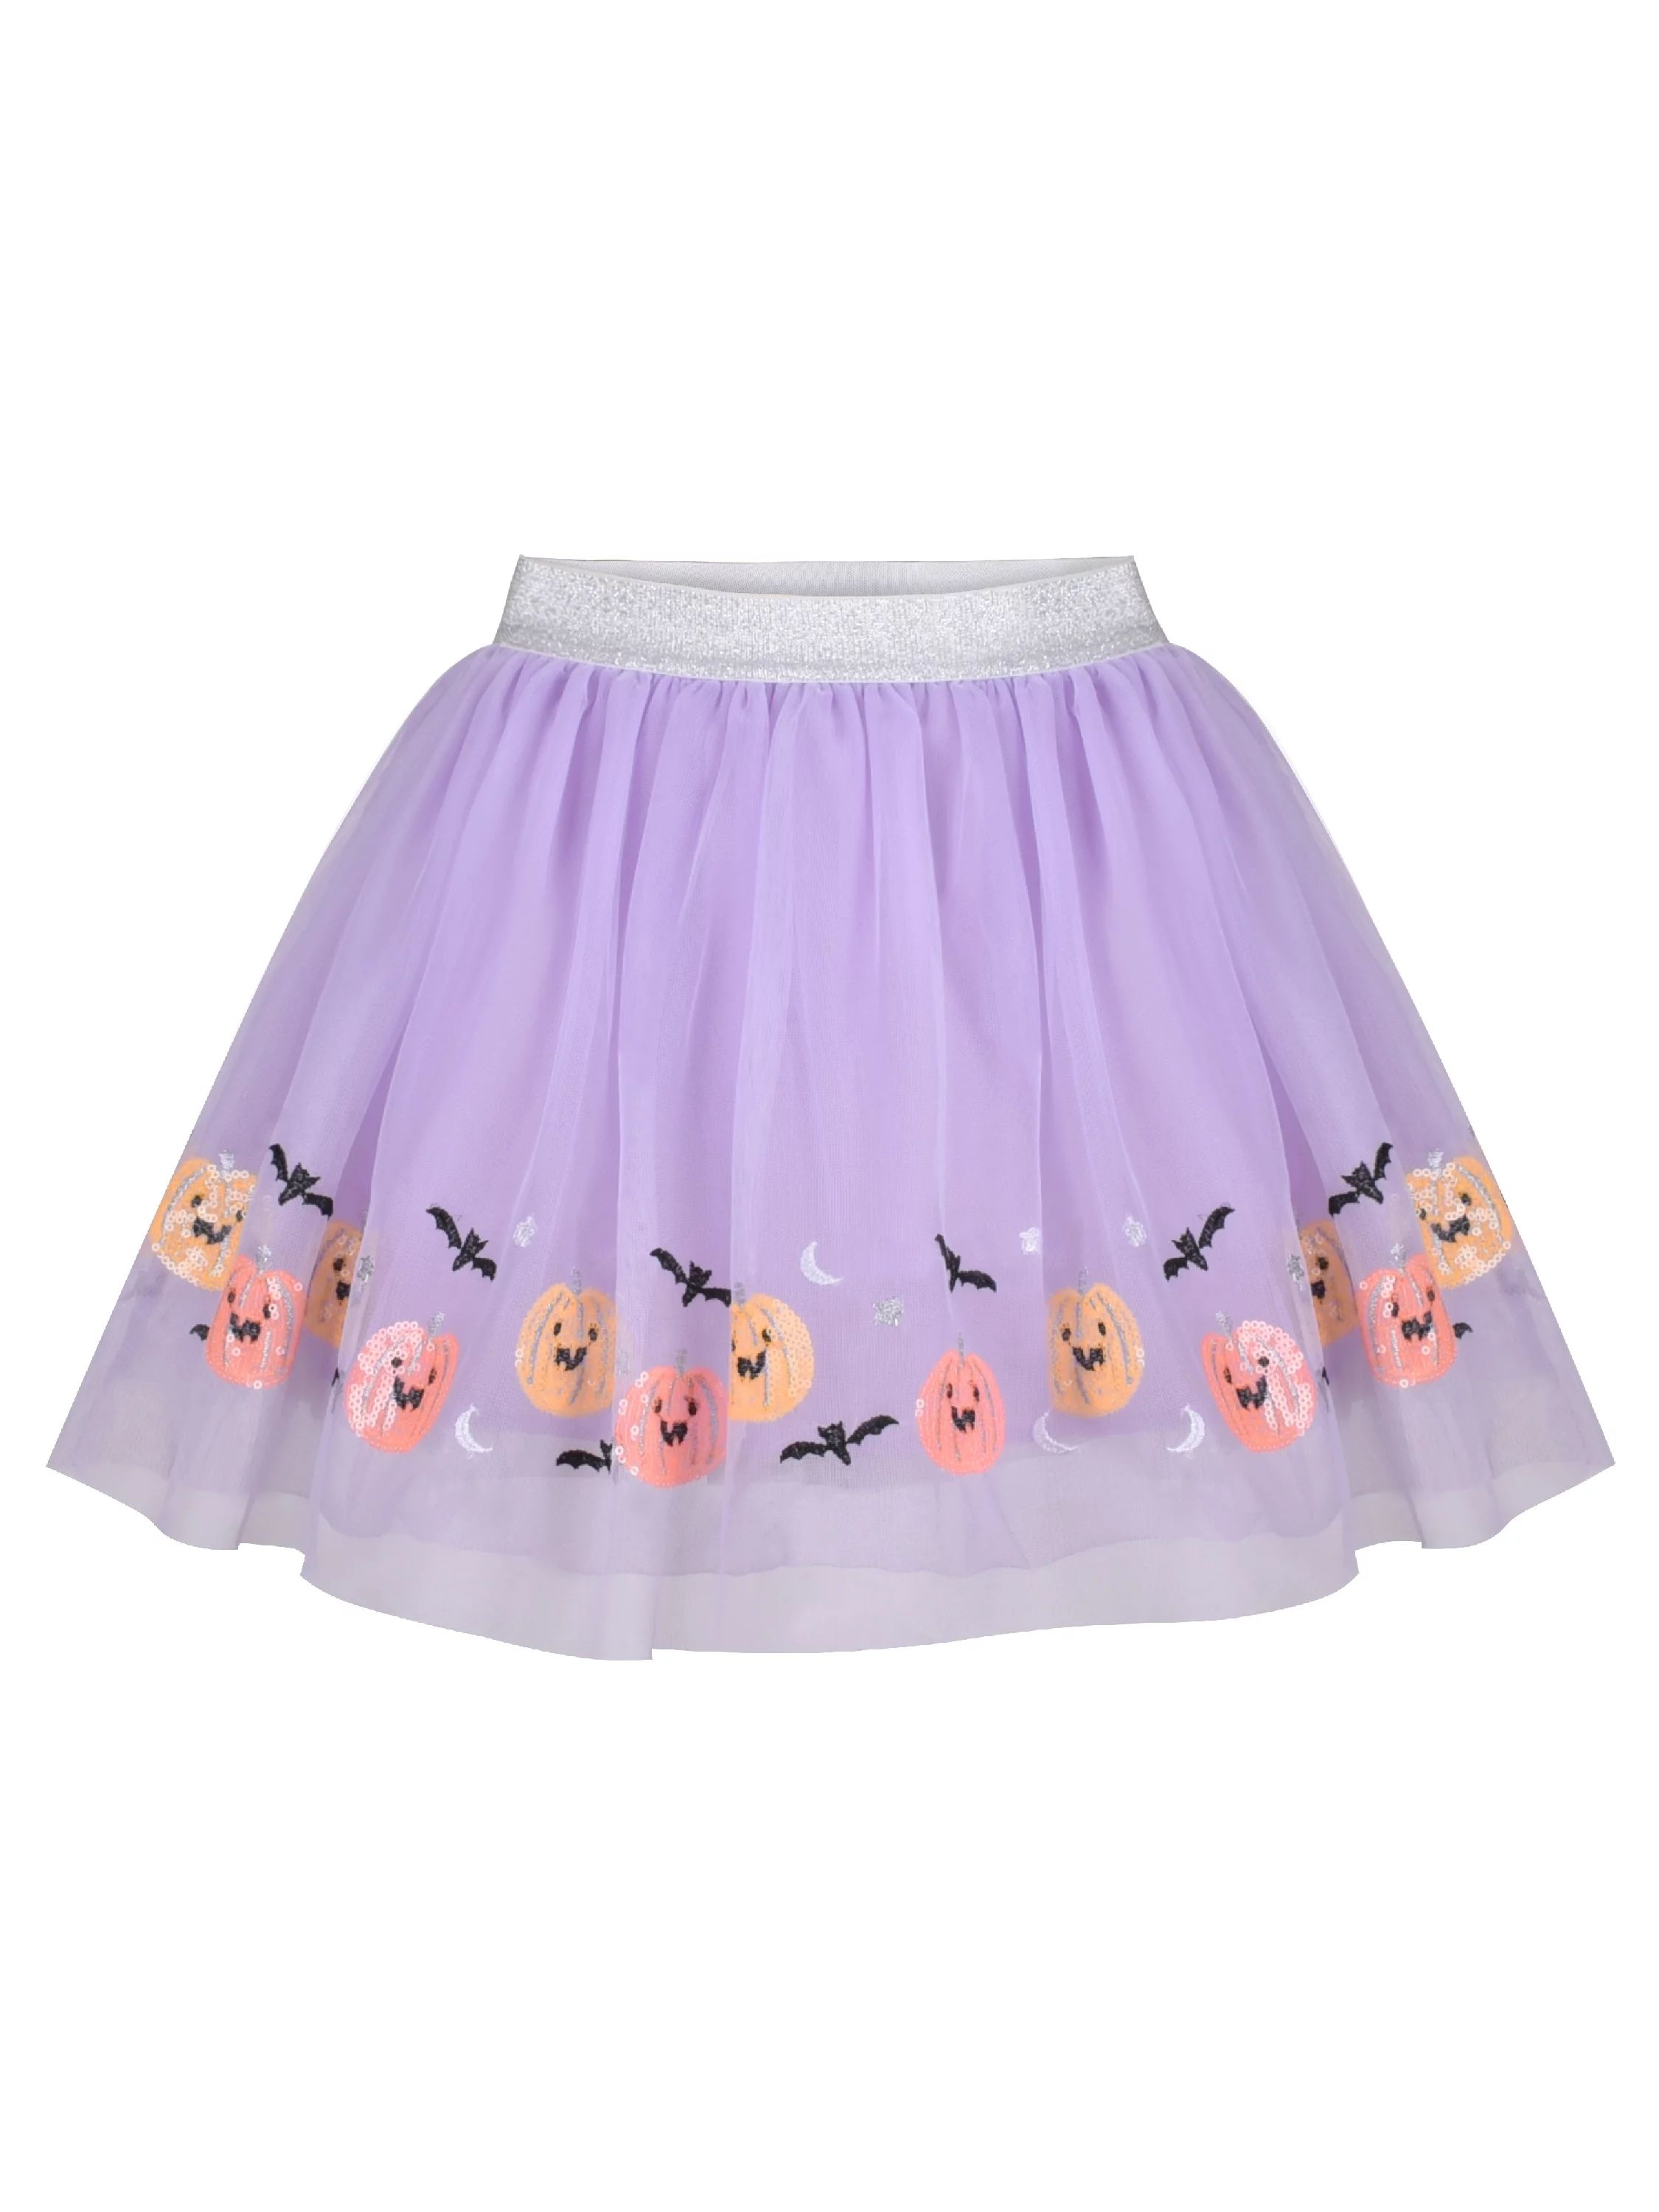 Girls Dress Halloween Bat Mesh Skirt Dancing Tutu Purple Sequin Pumpkin Face 4-5 Years | Walmart (US)